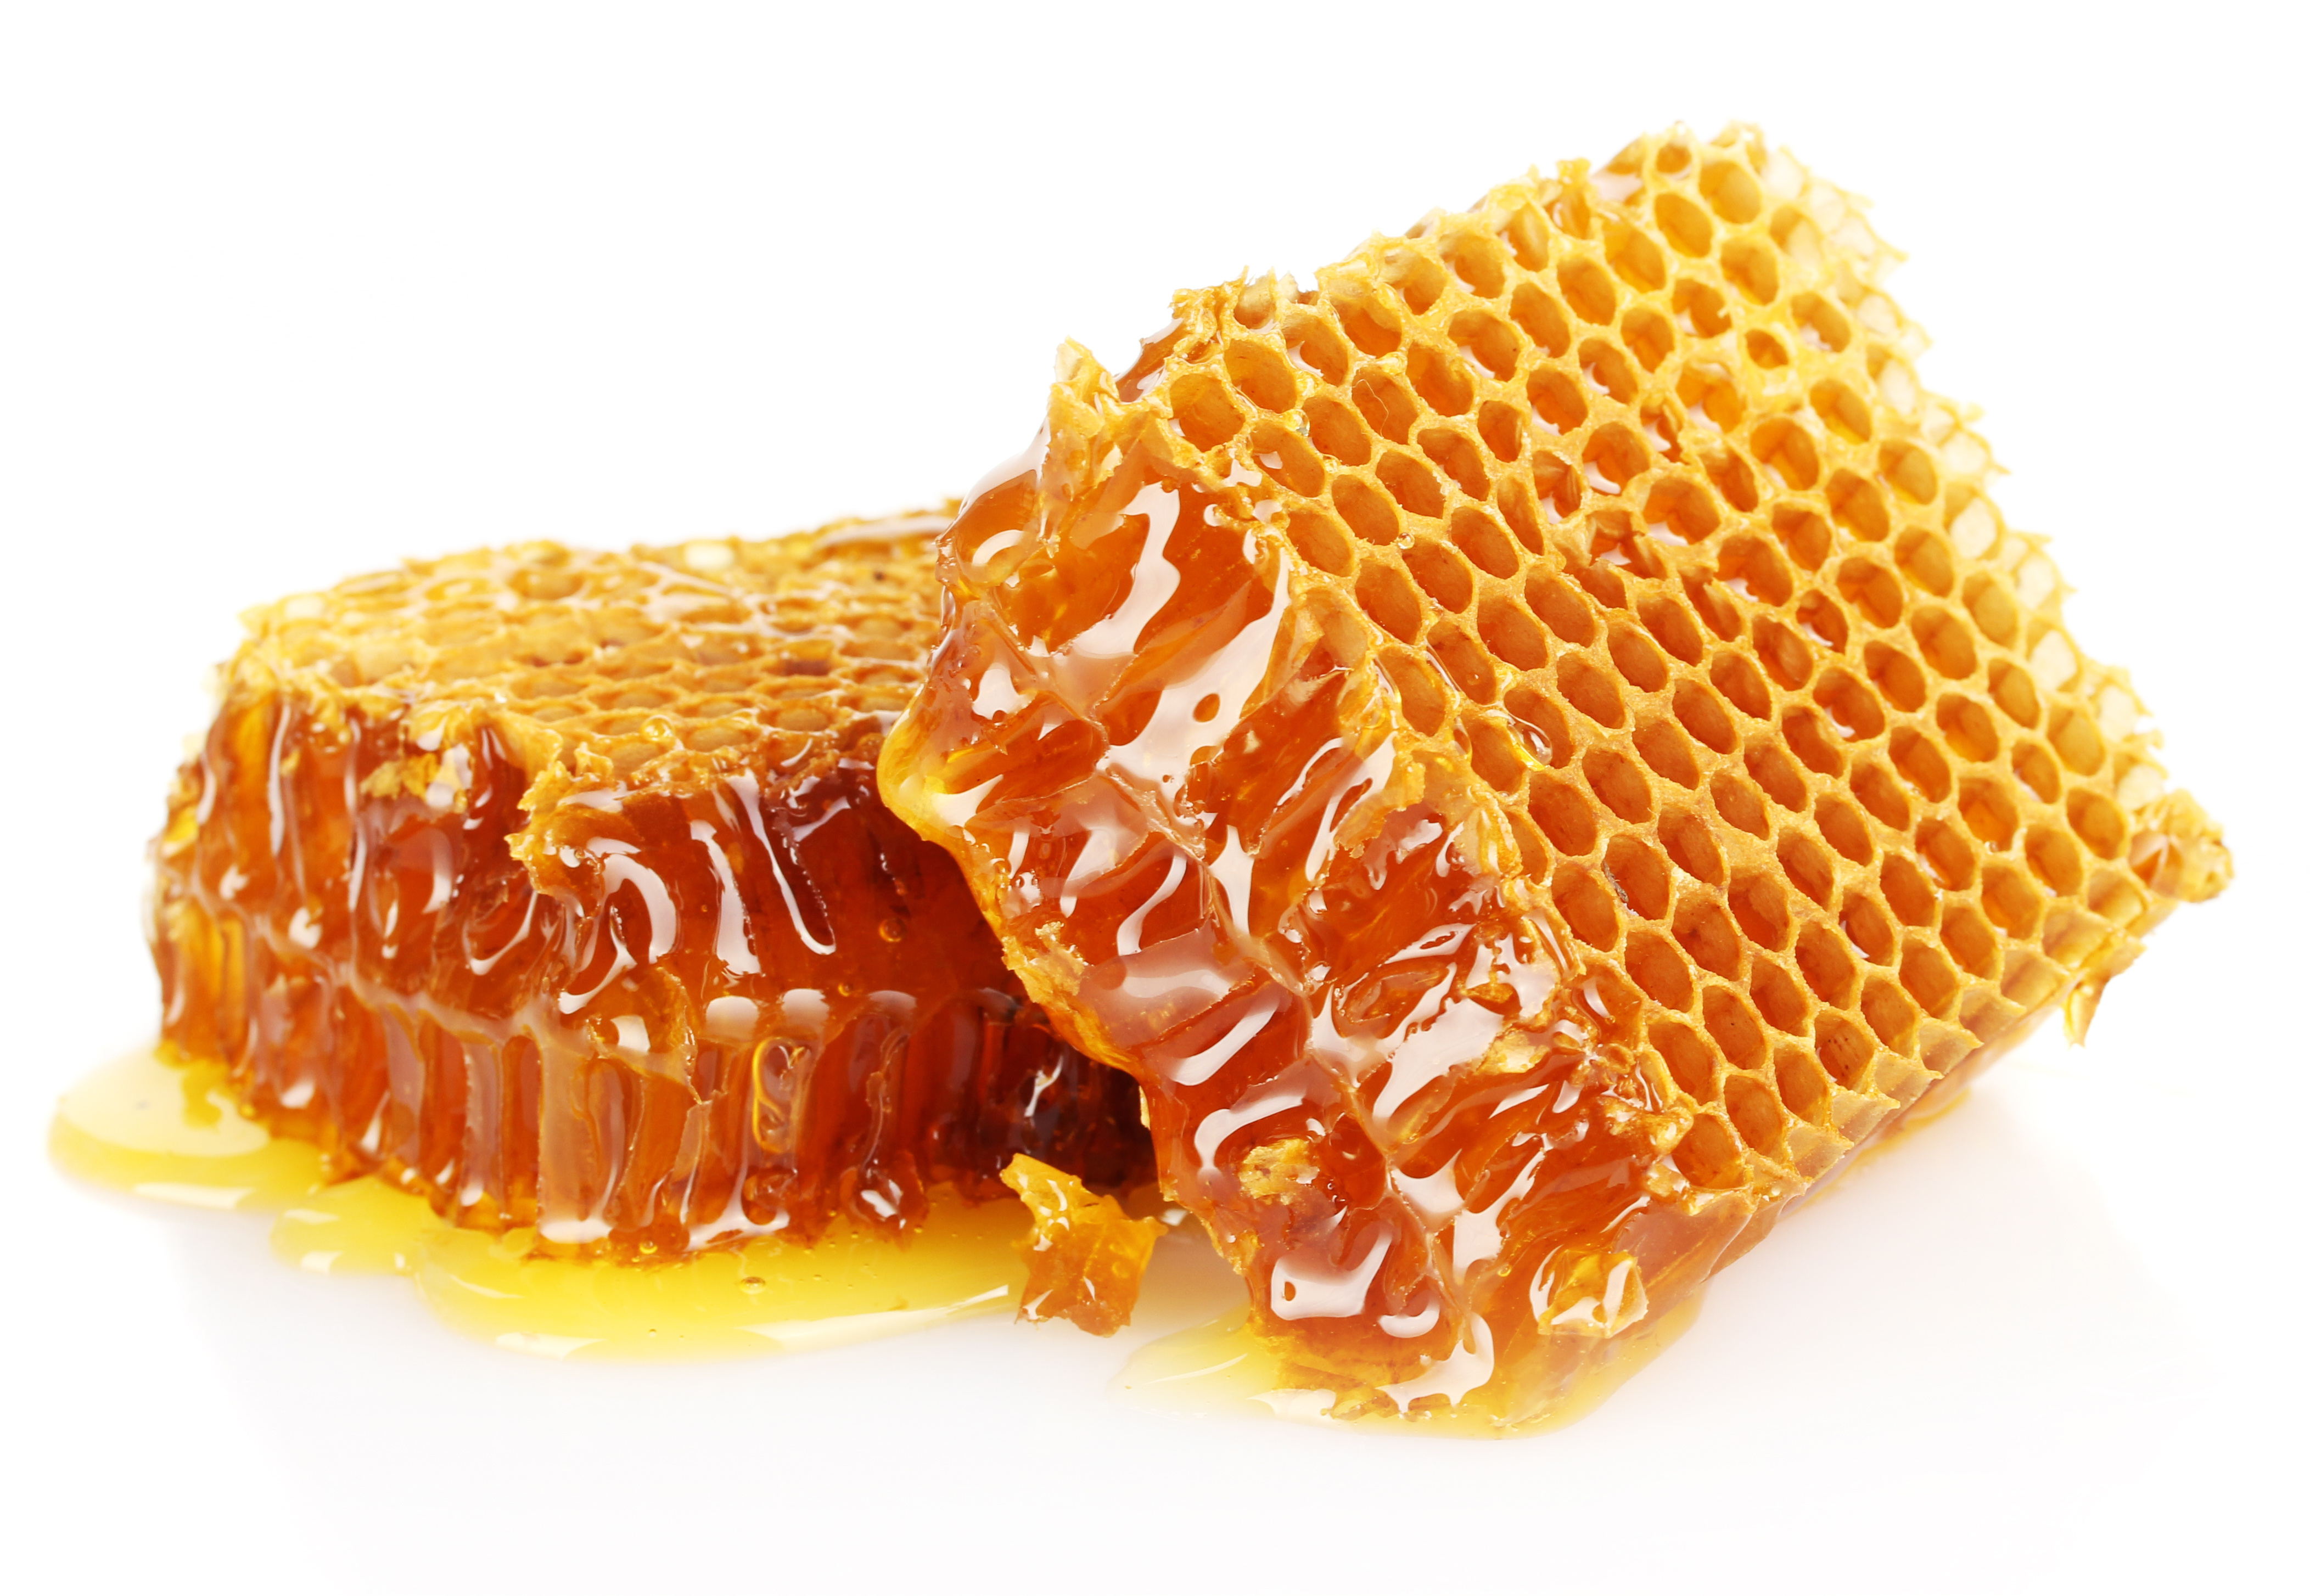 A honeycomb oozing honey